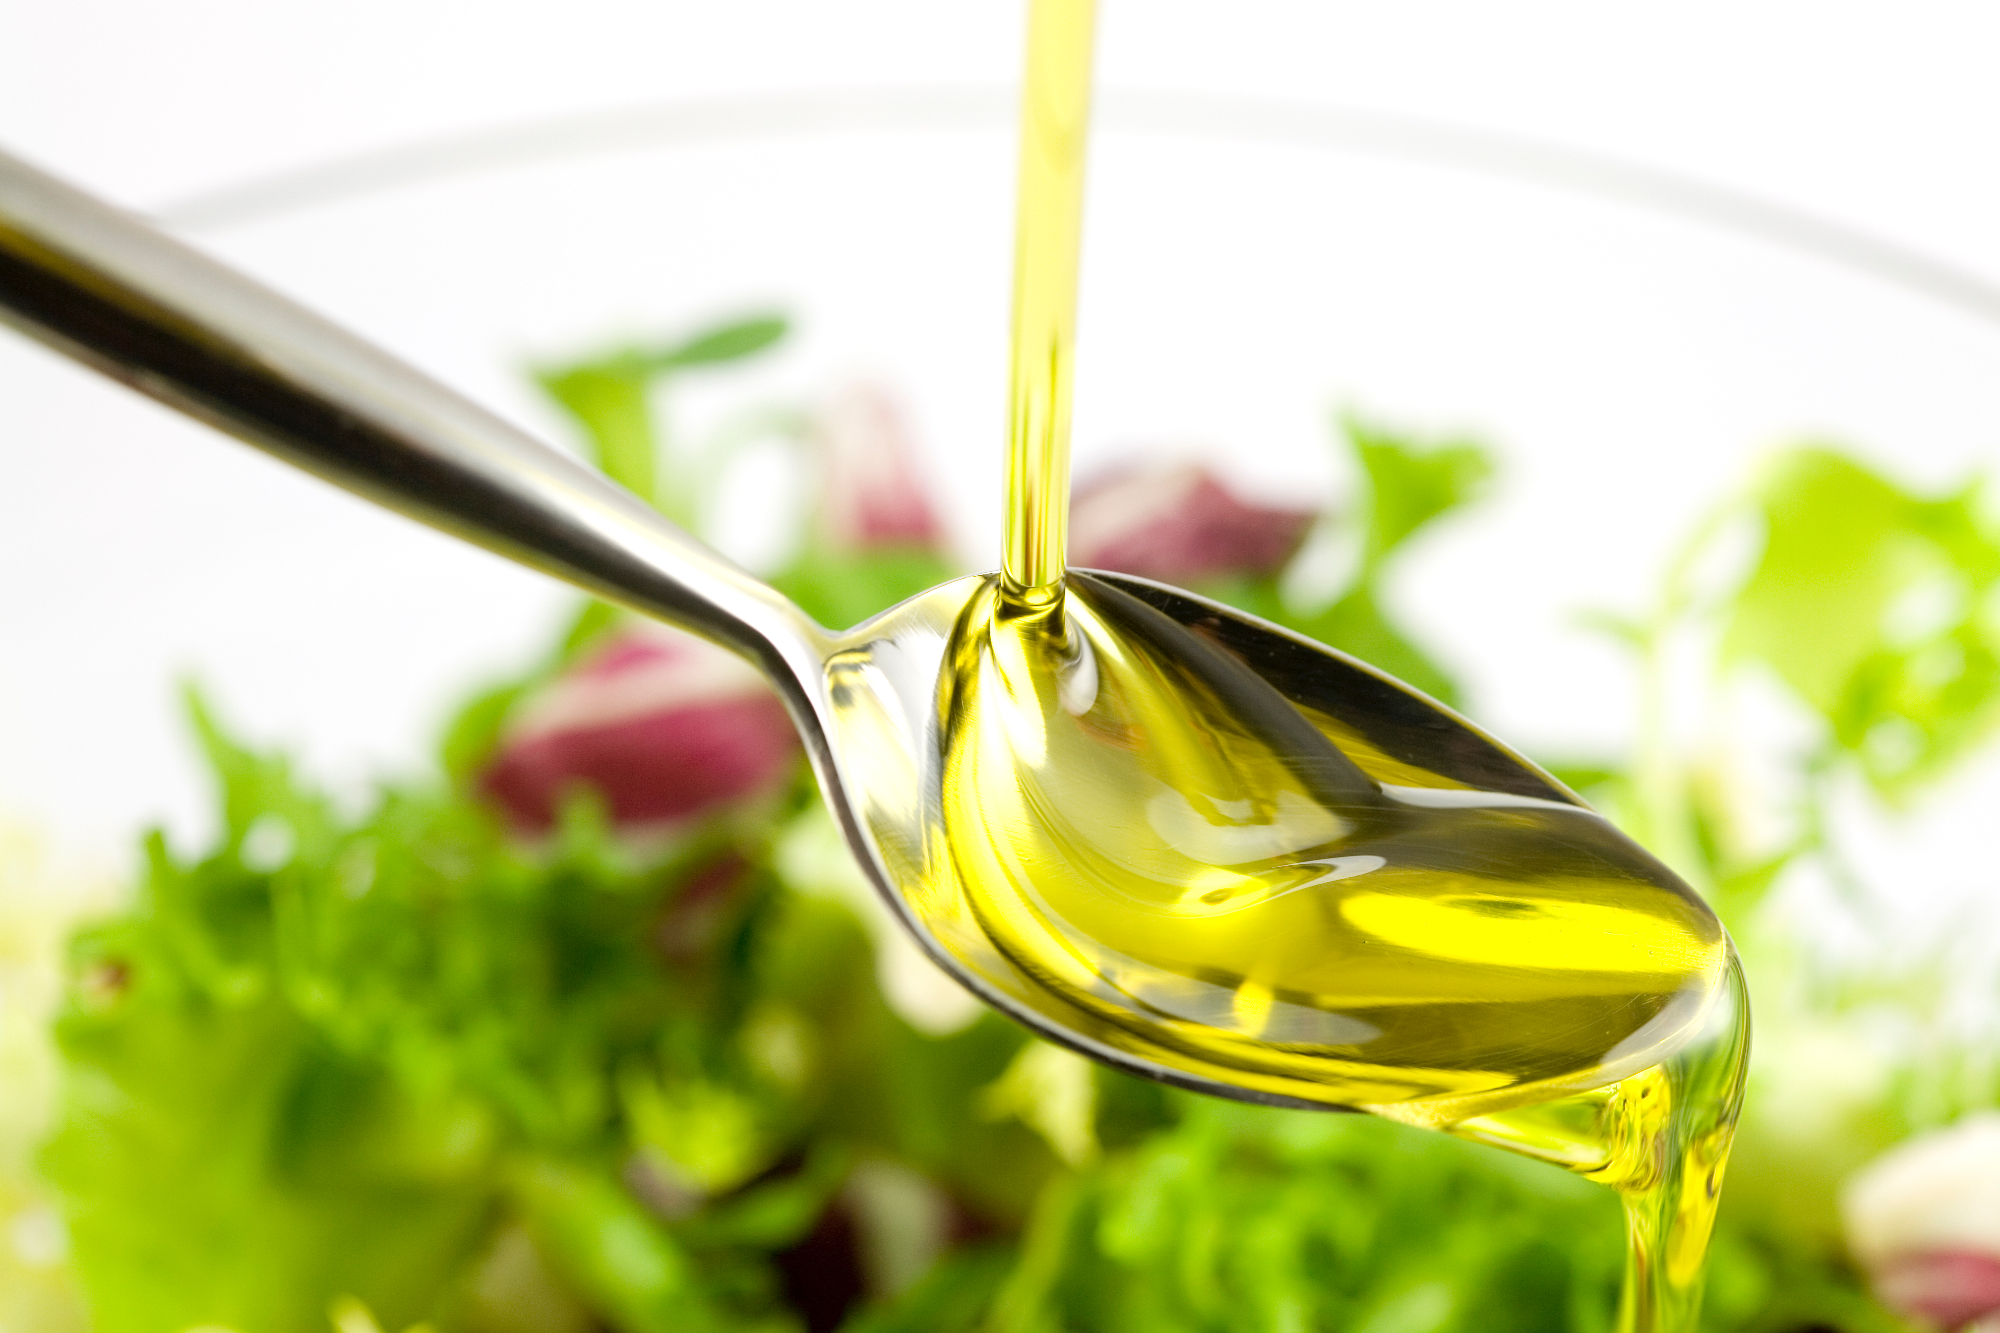 Olivno olje Lisjak je postalo naše najljubše olje